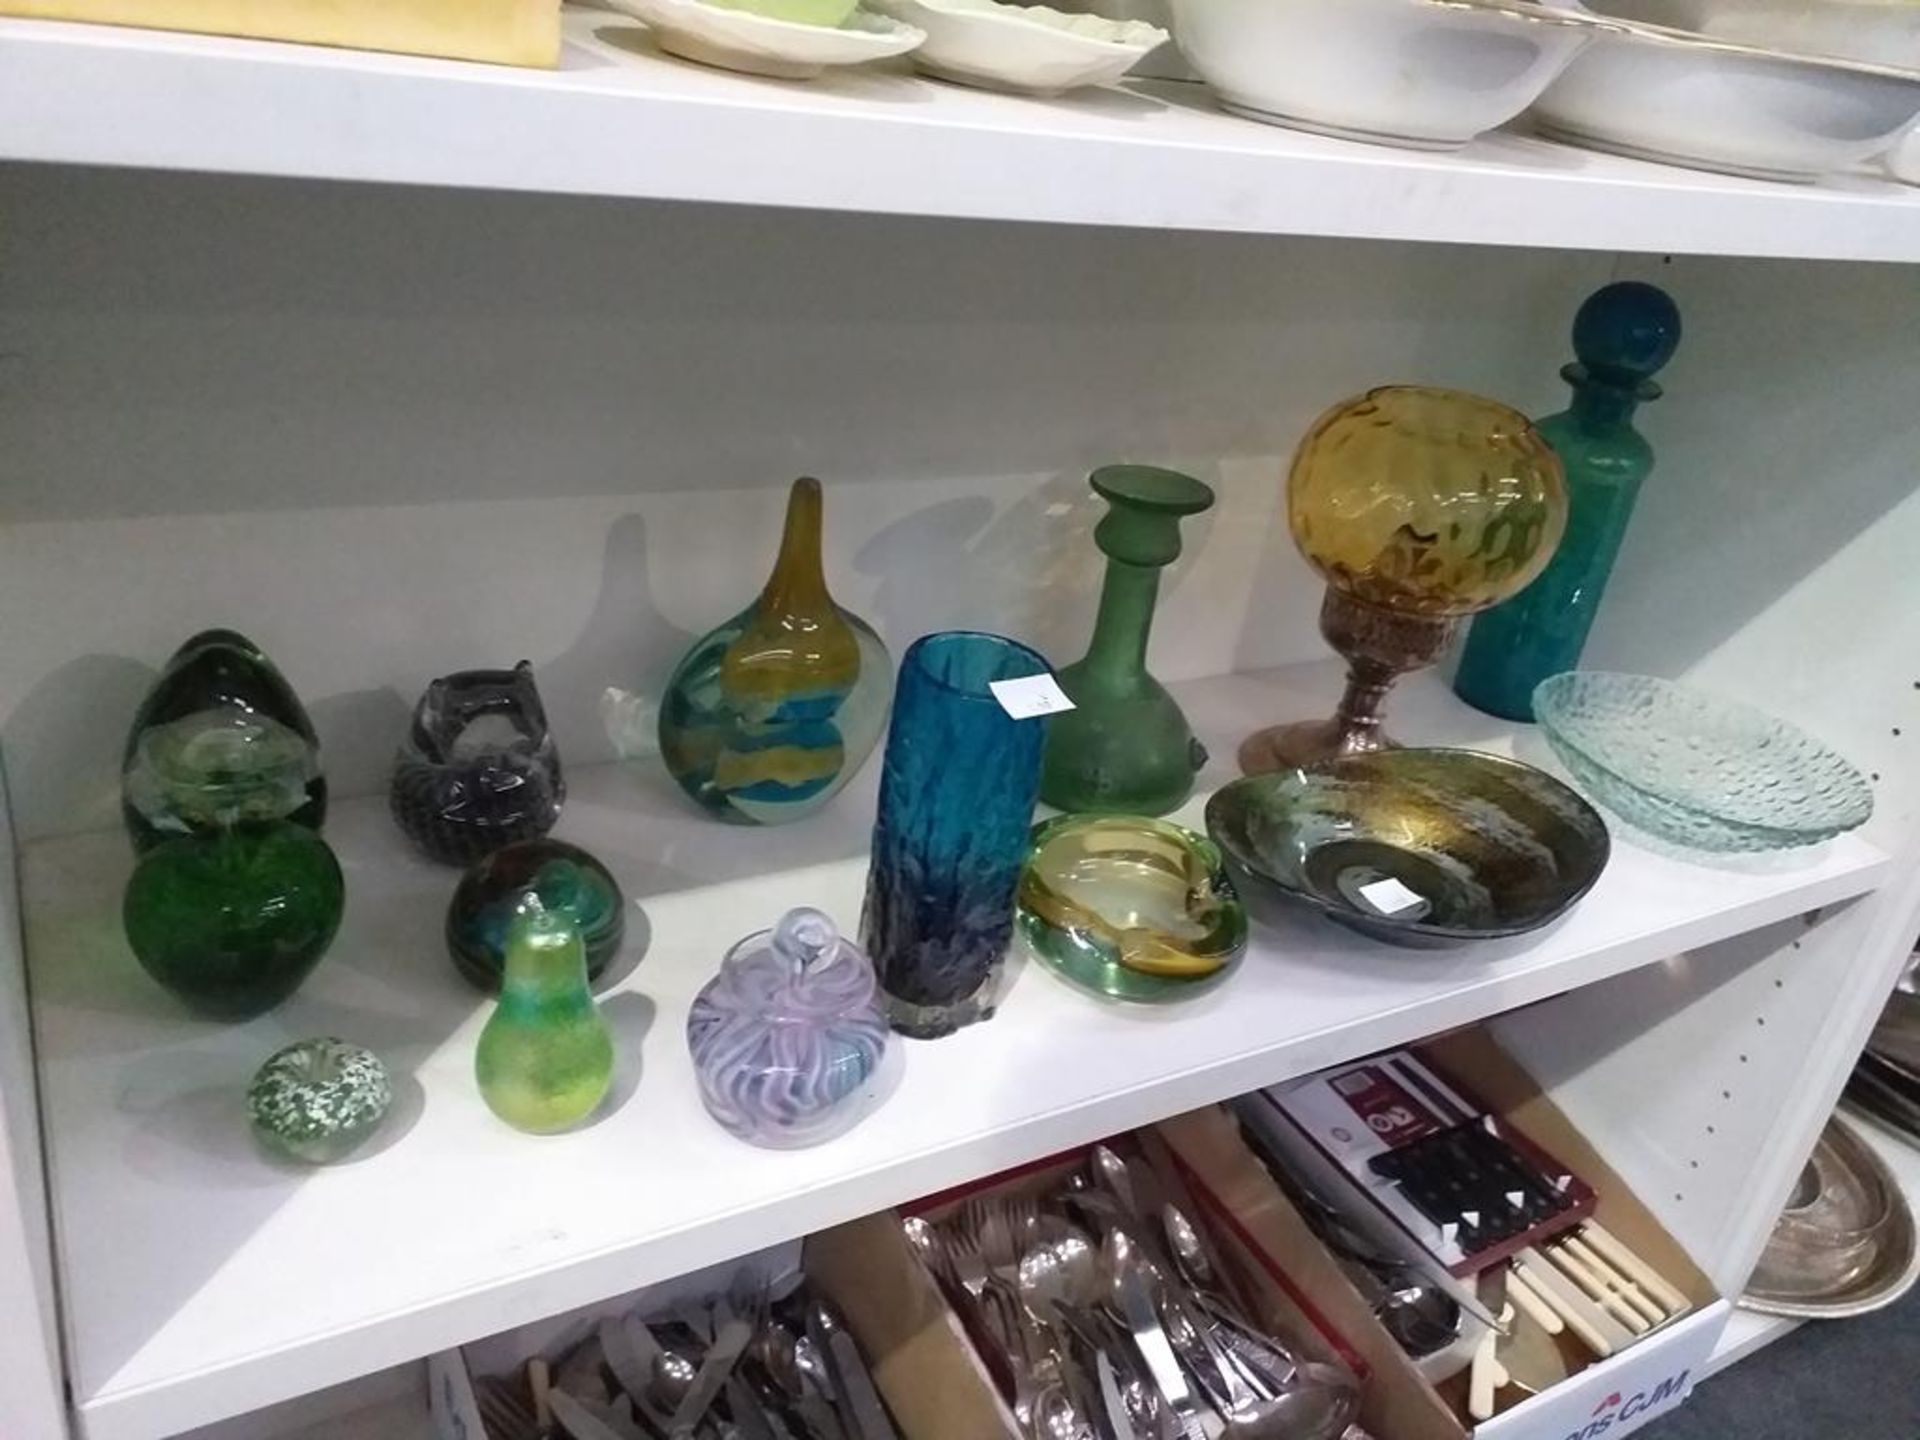 A Shelf of Glassware